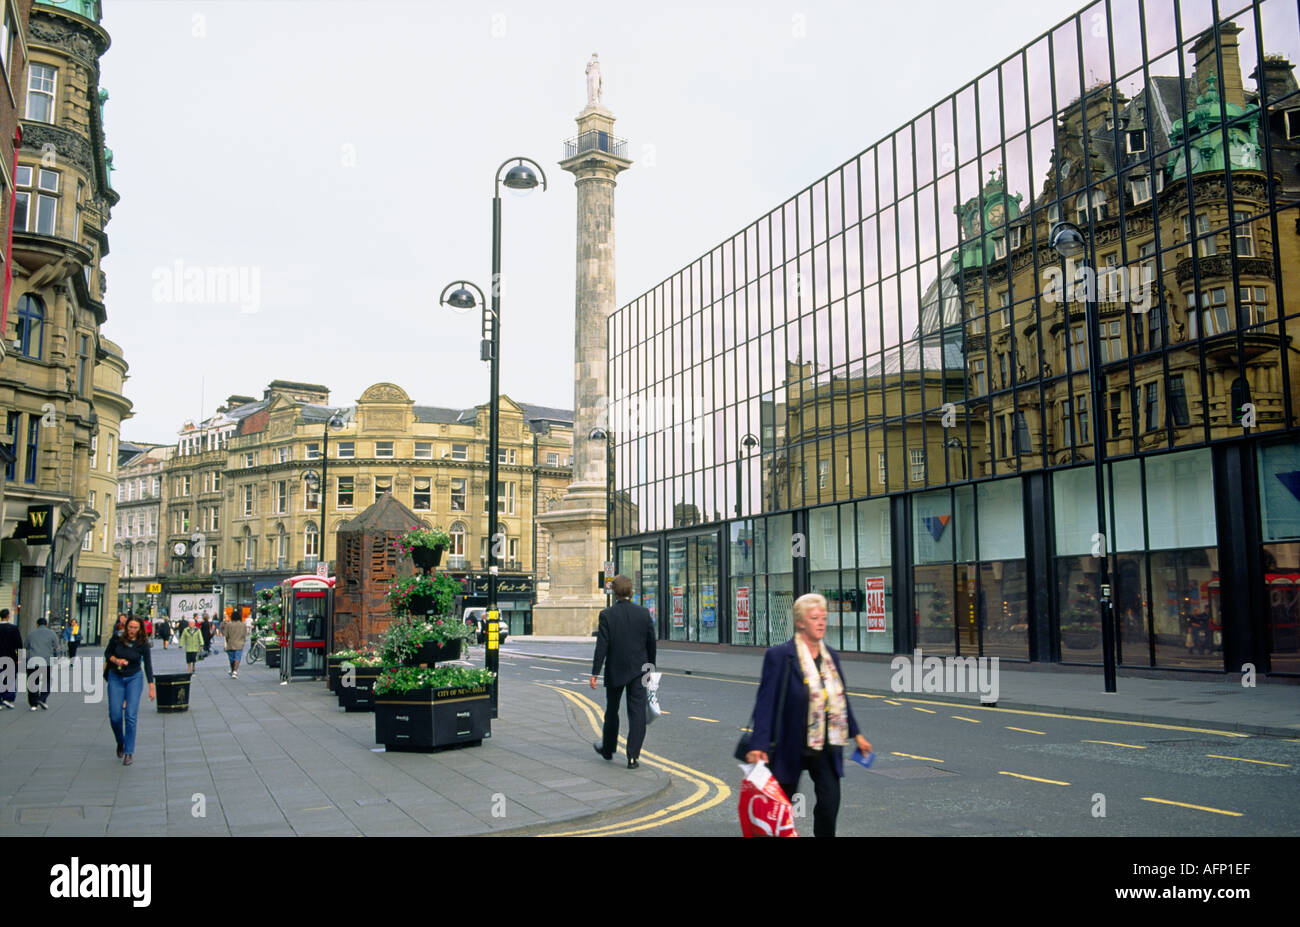 Le centre-ville de Newcastle Upon Tyne, Angleterre, Tyneside. Blackett St. montrant le centre commercial Eldon Square et Monument gris. Banque D'Images